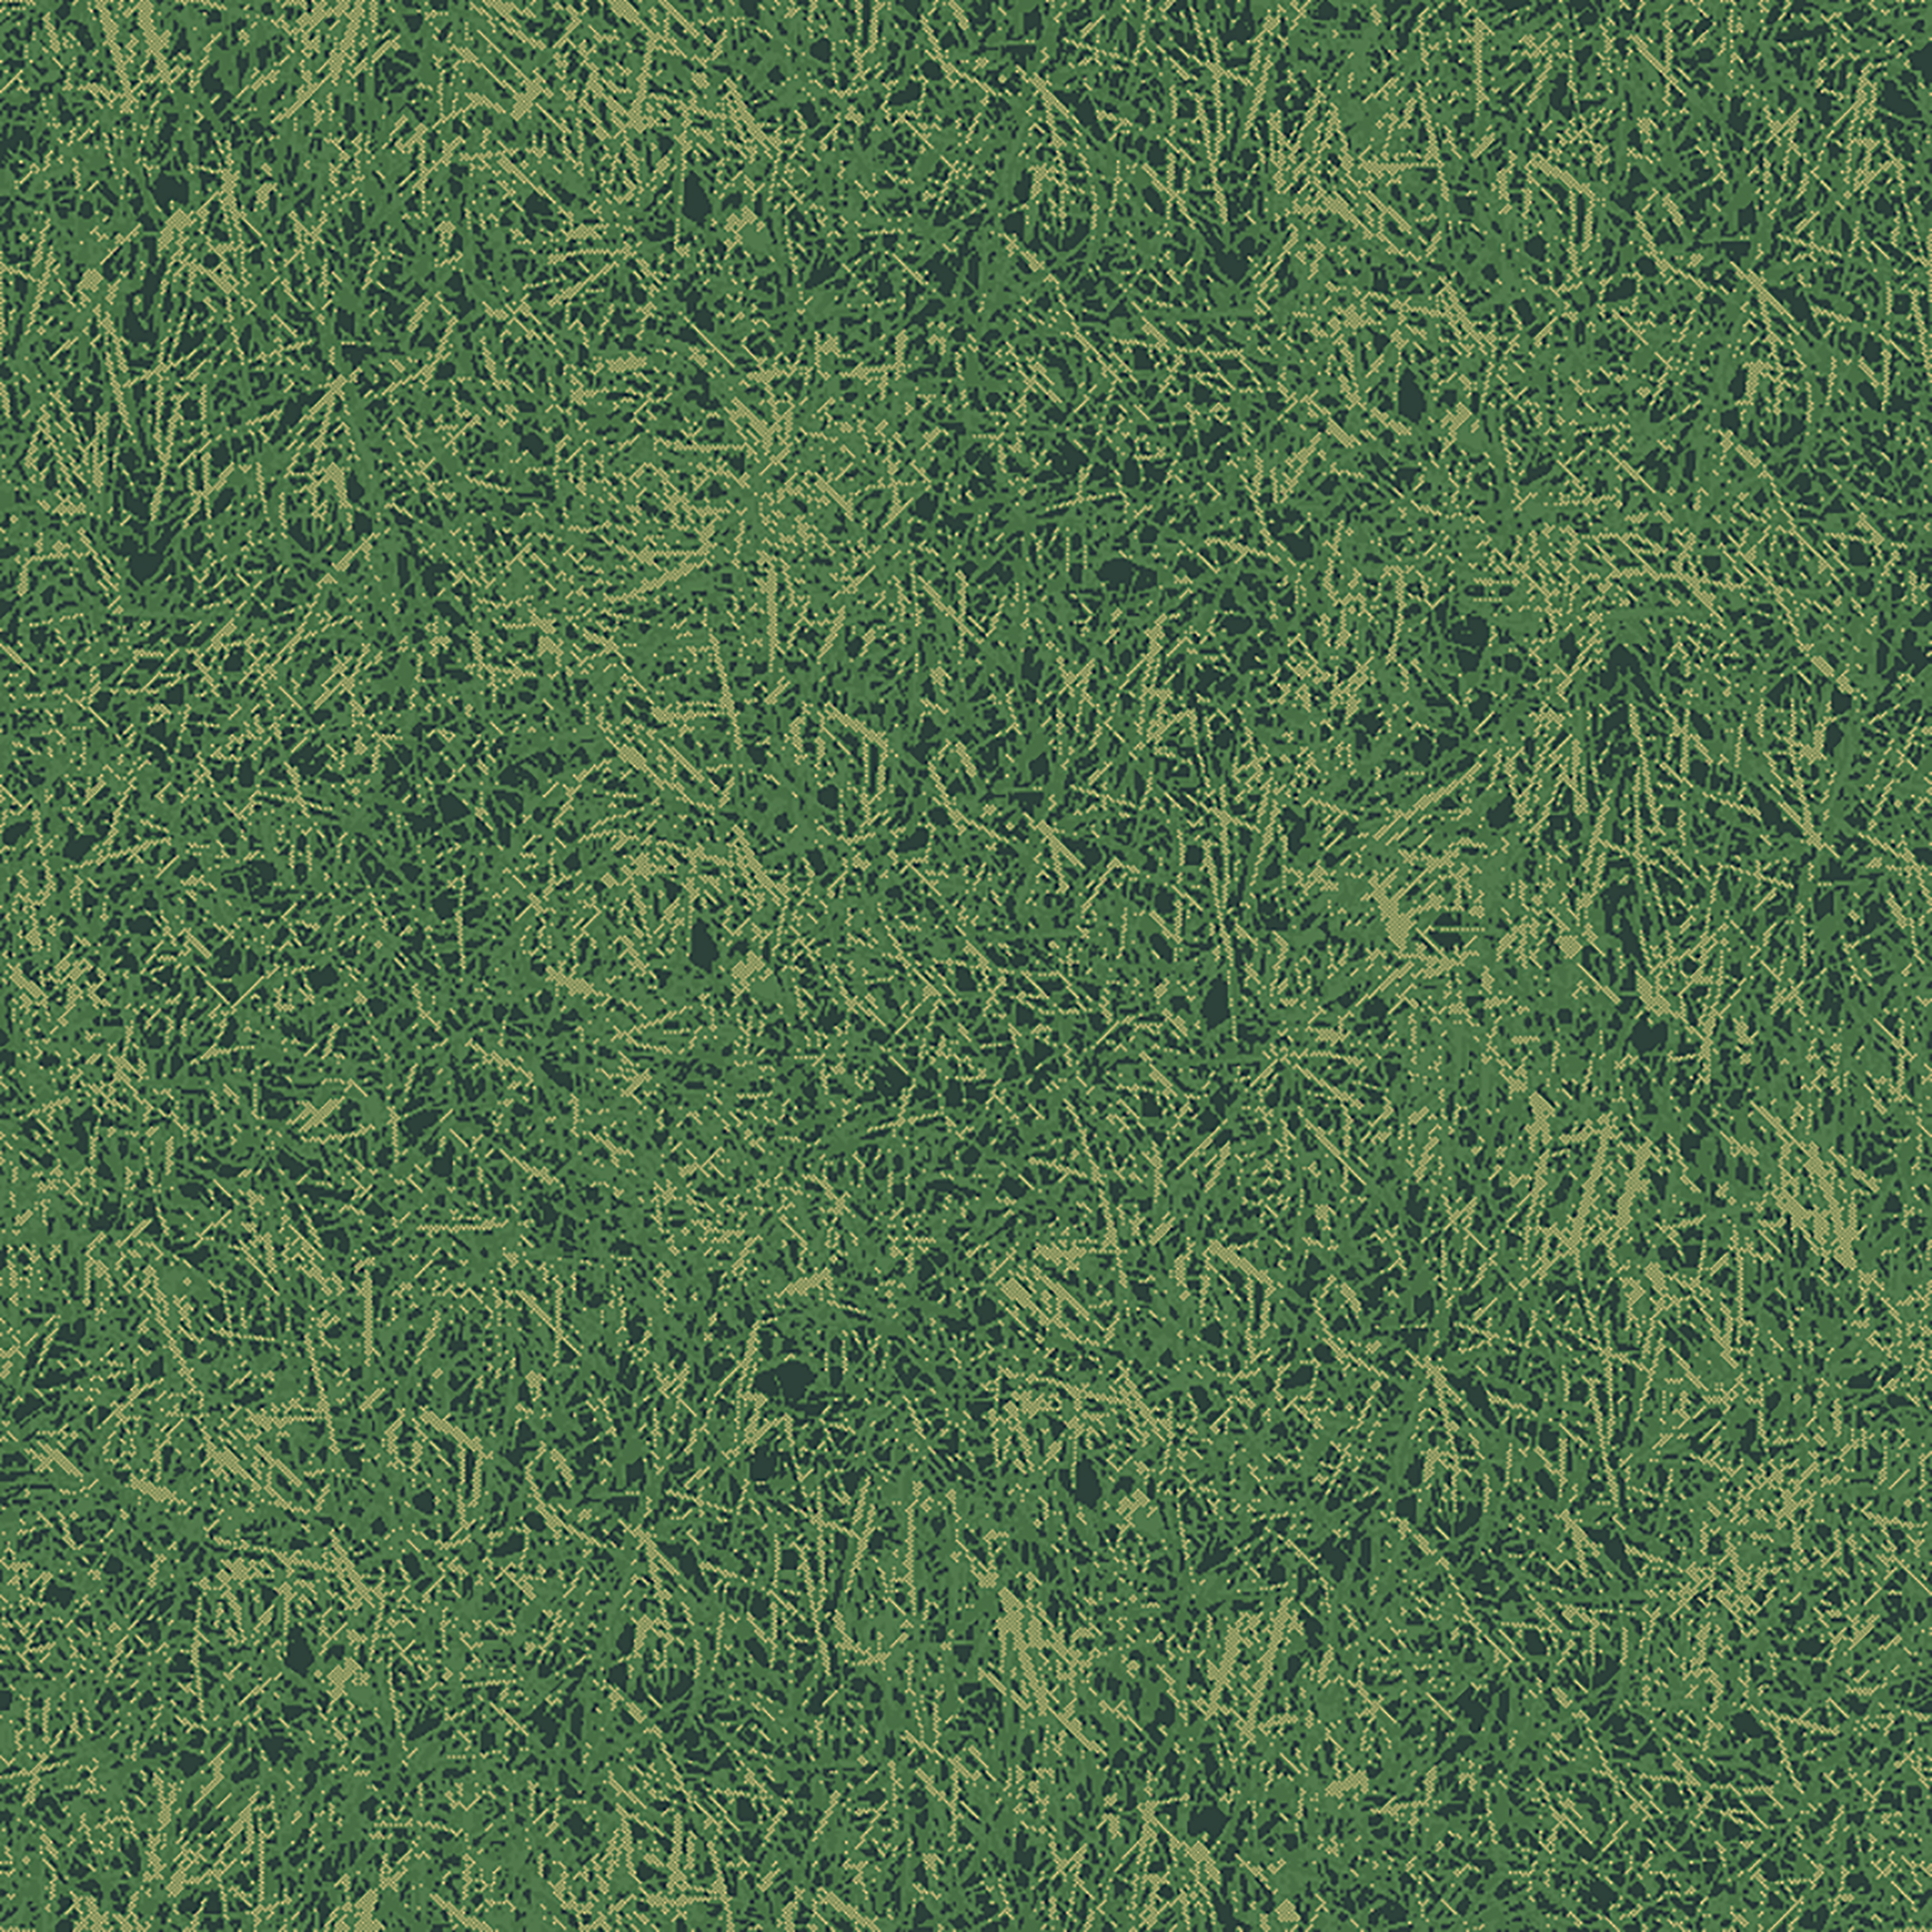 grass field  green